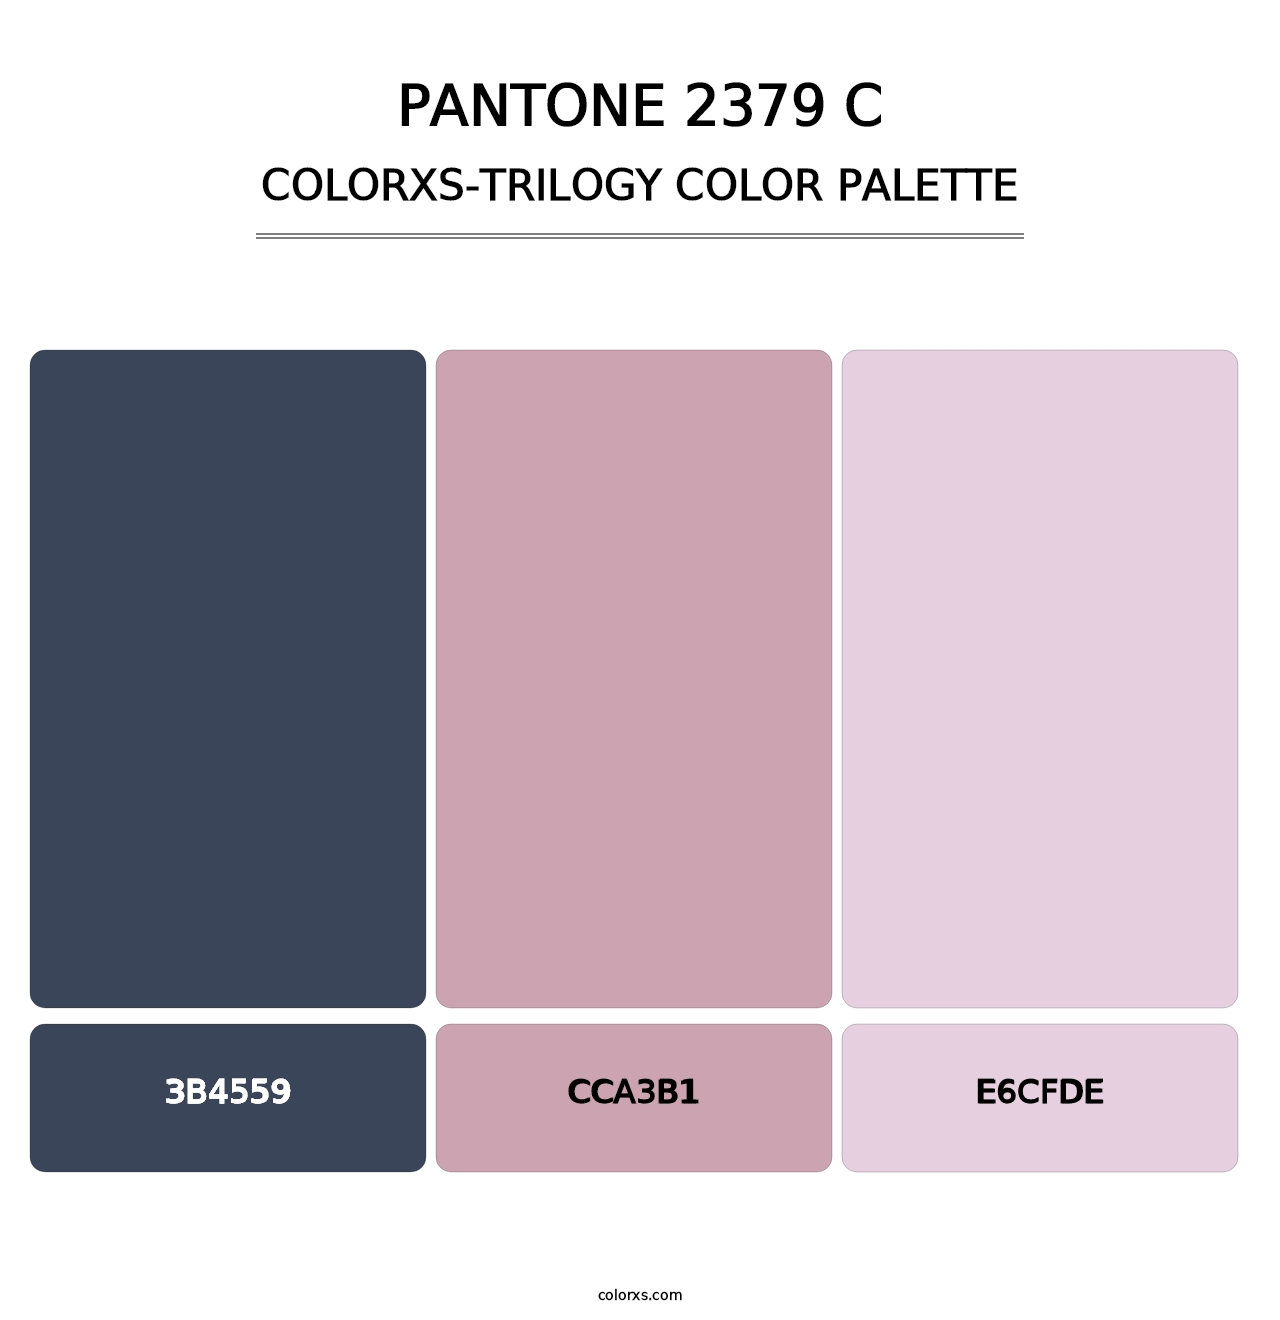 PANTONE 2379 C - Colorxs Trilogy Palette